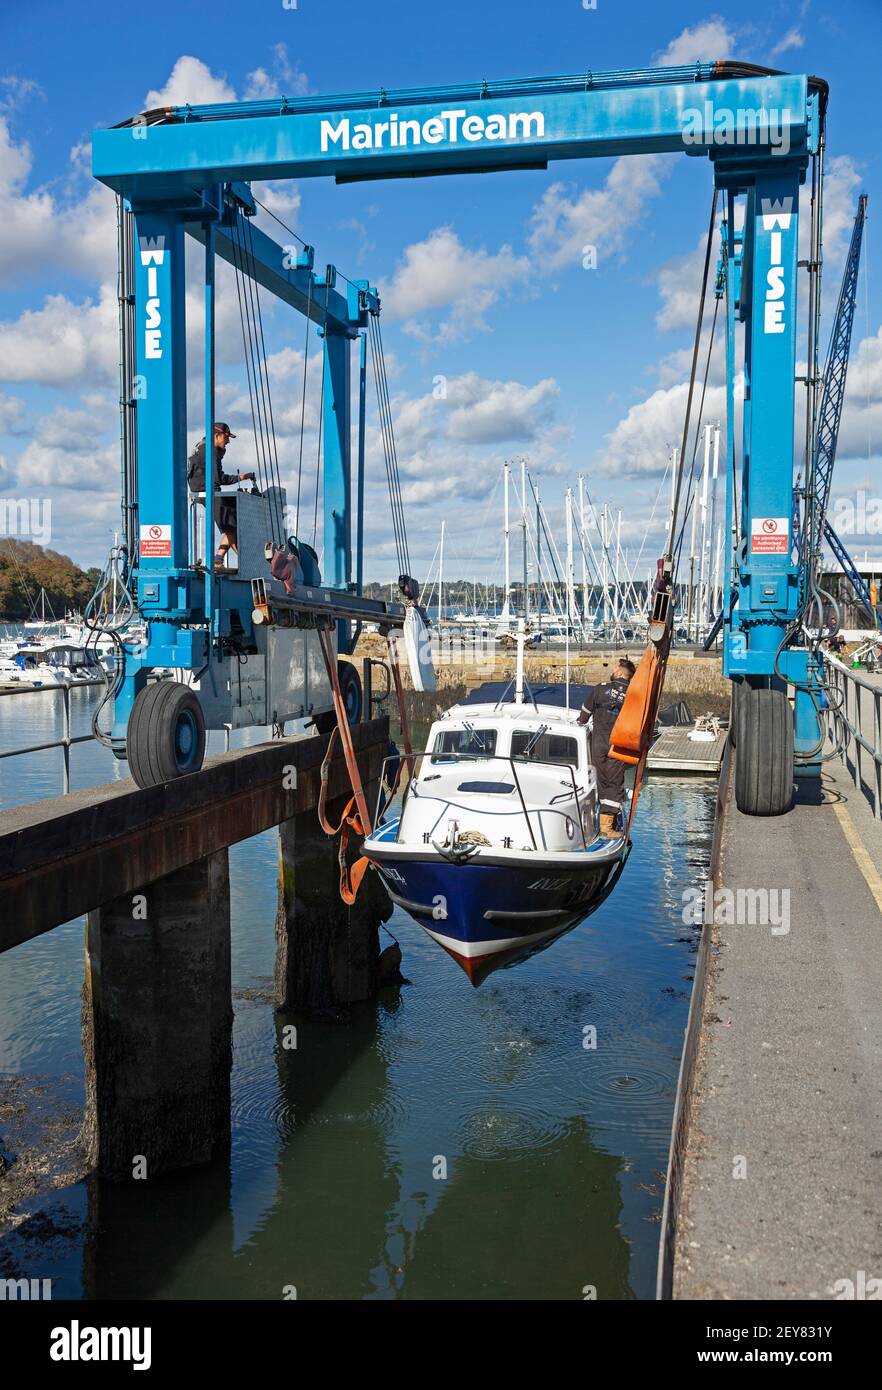 Un bateau est tiré de l'eau au port de Mylor Yatch, près de Falmouth, dans les Cornouailles, pour l'entretien et l'entreposage. Banque D'Images